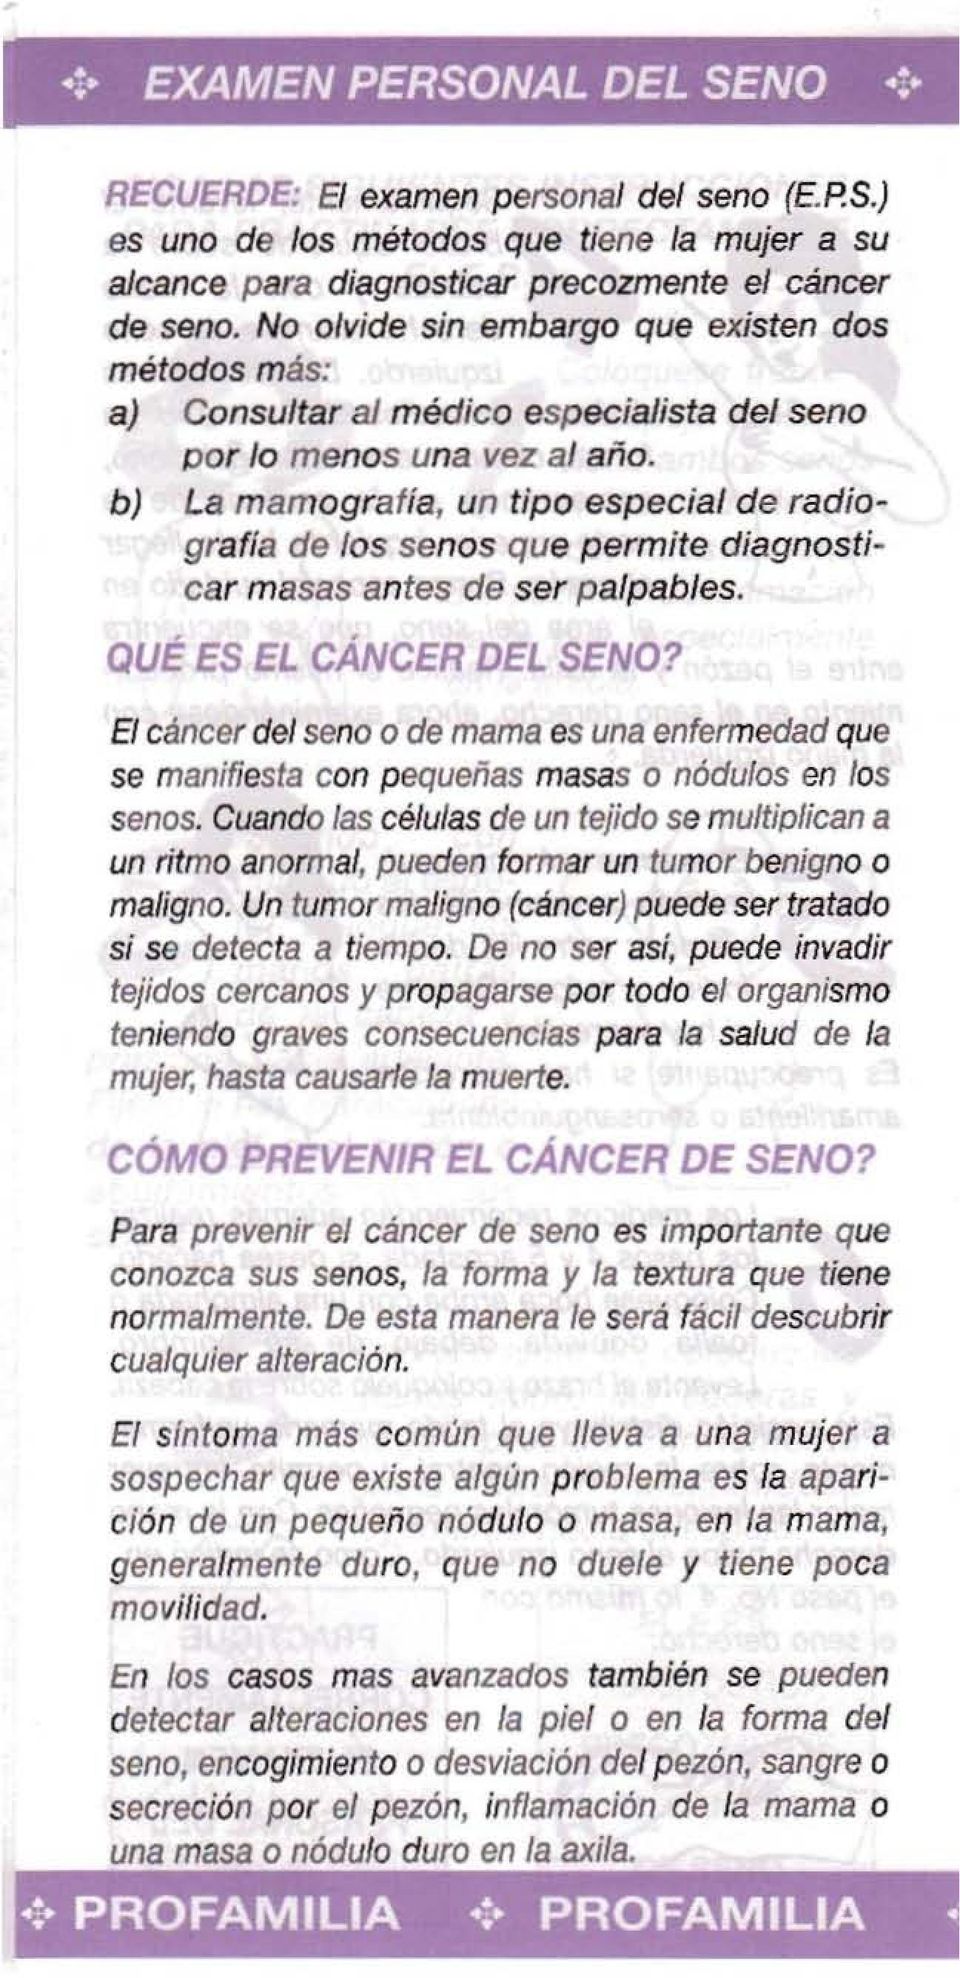 b) La mamografia, un tipo especial de radiografia de los senos que permite diagnosticar masas antes de ser palpables. QUE ES EL CANCER DEL SENO?